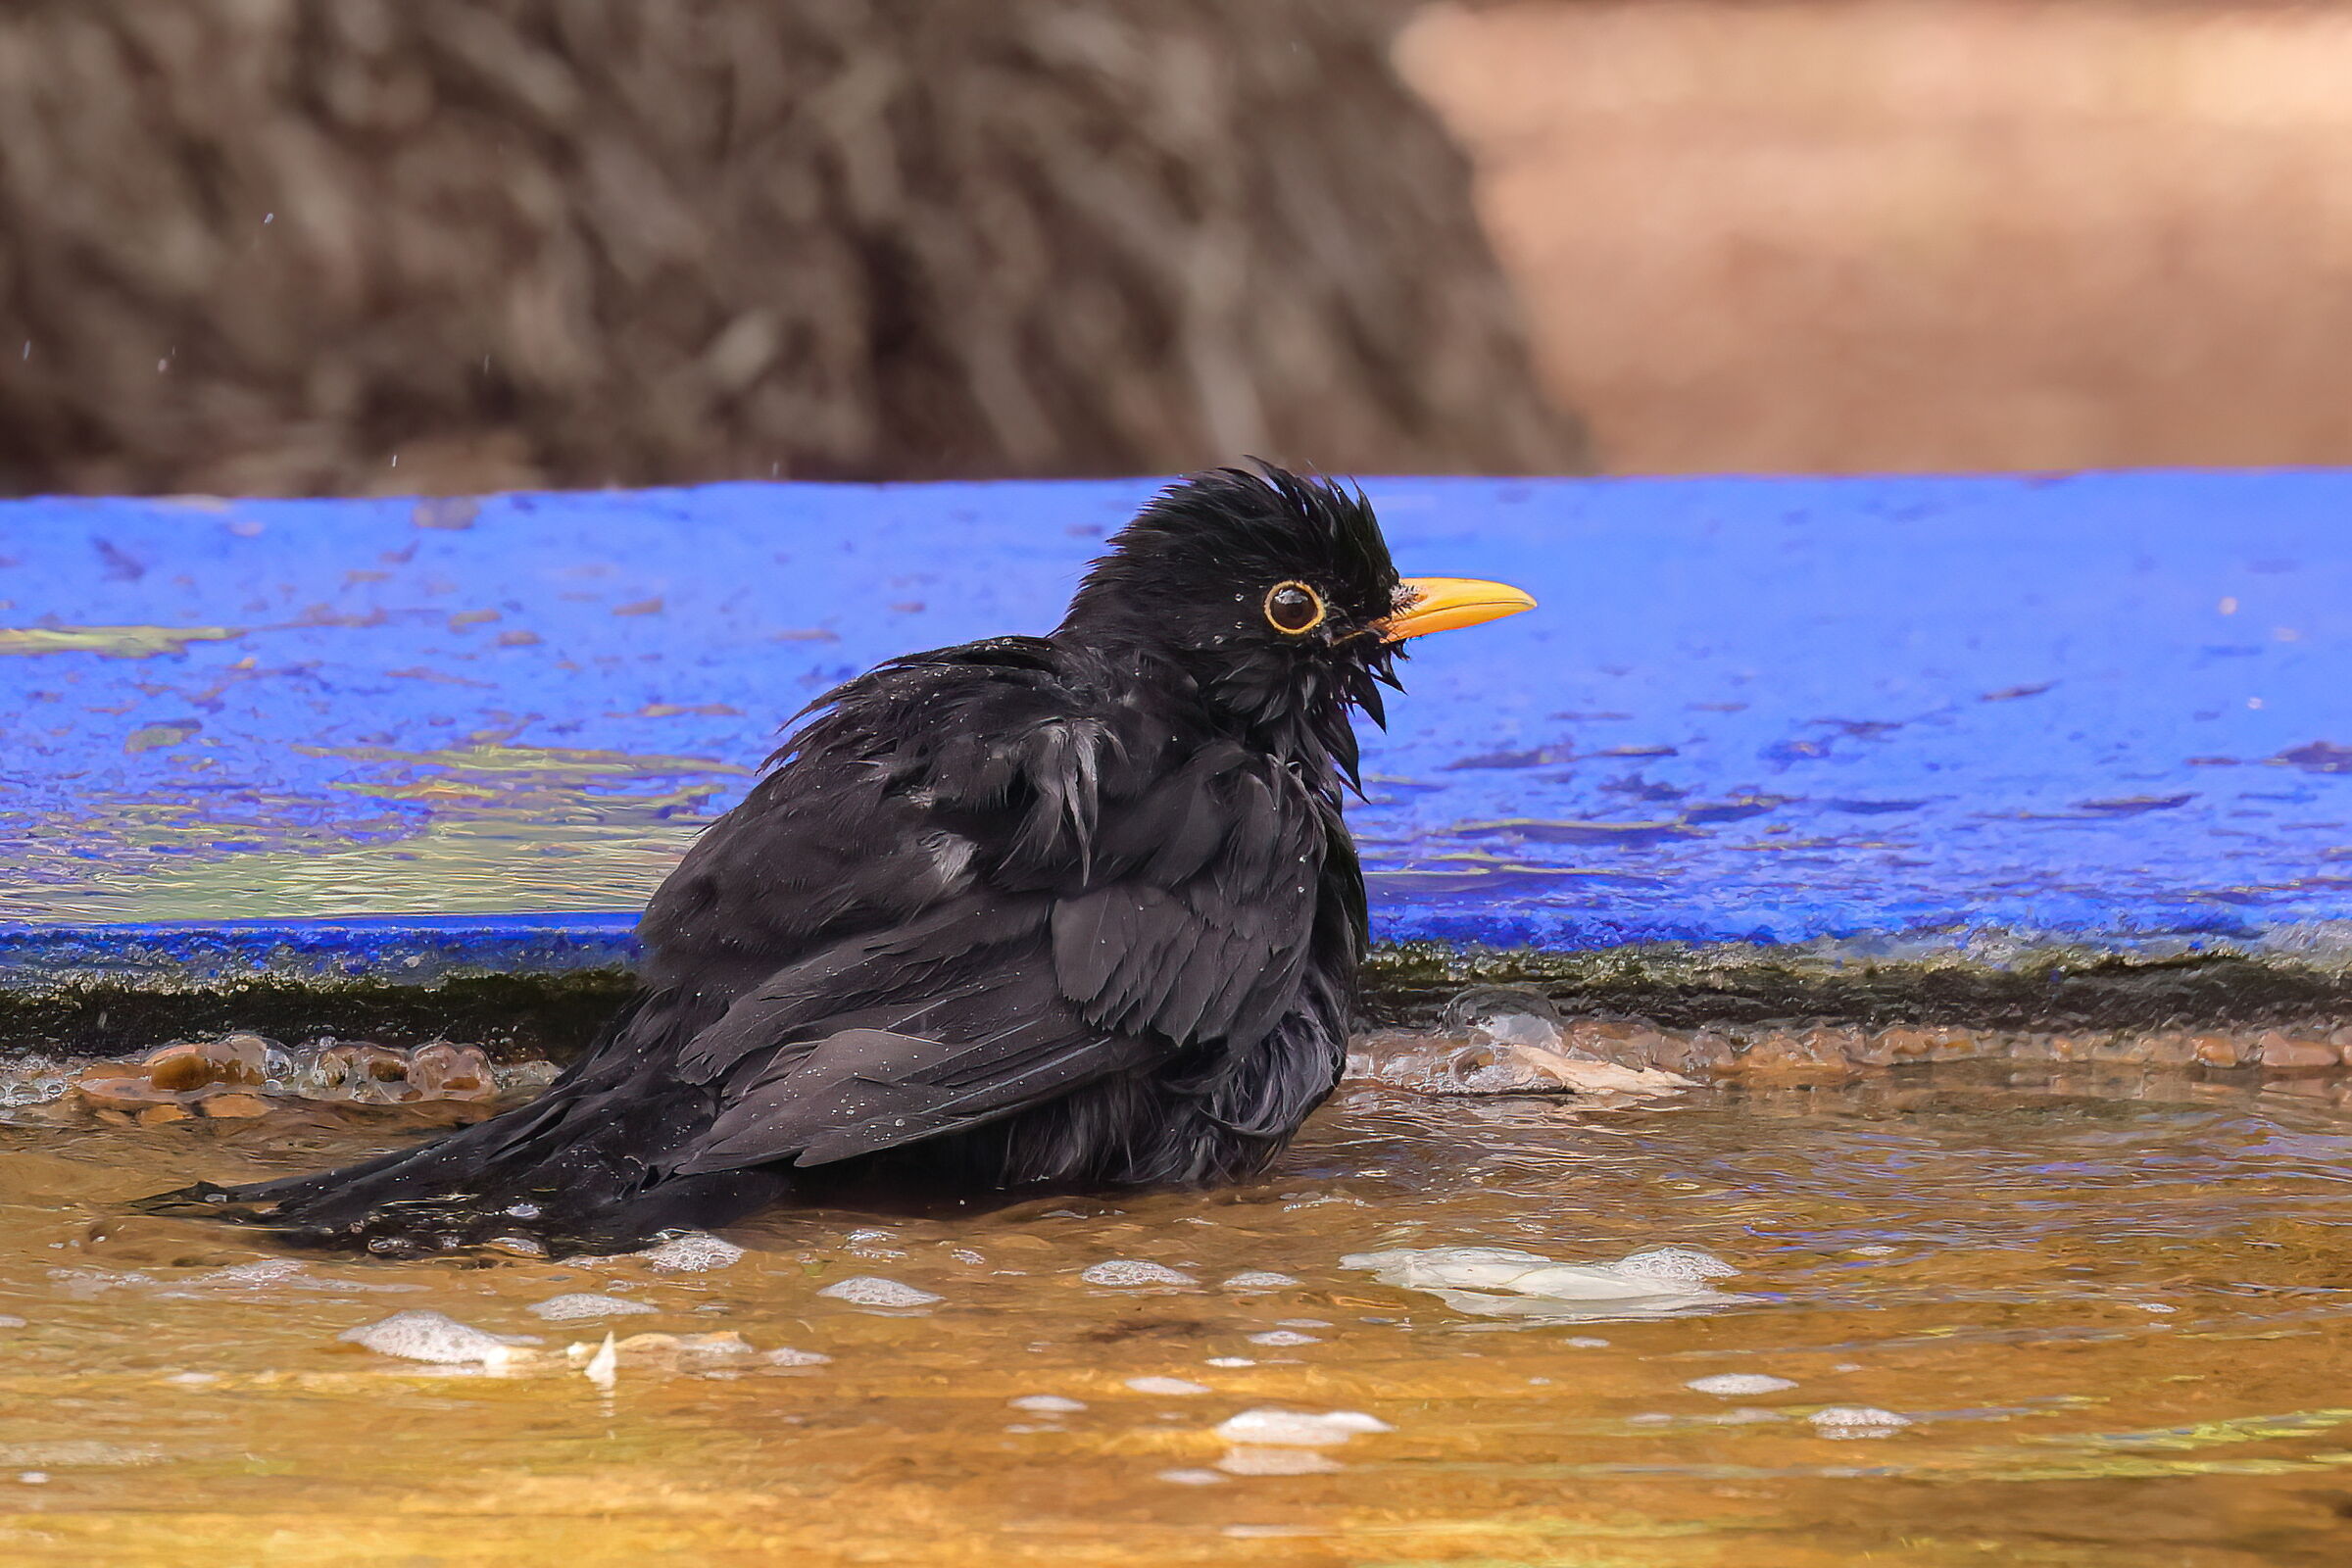 A blackbird in Marrakech...